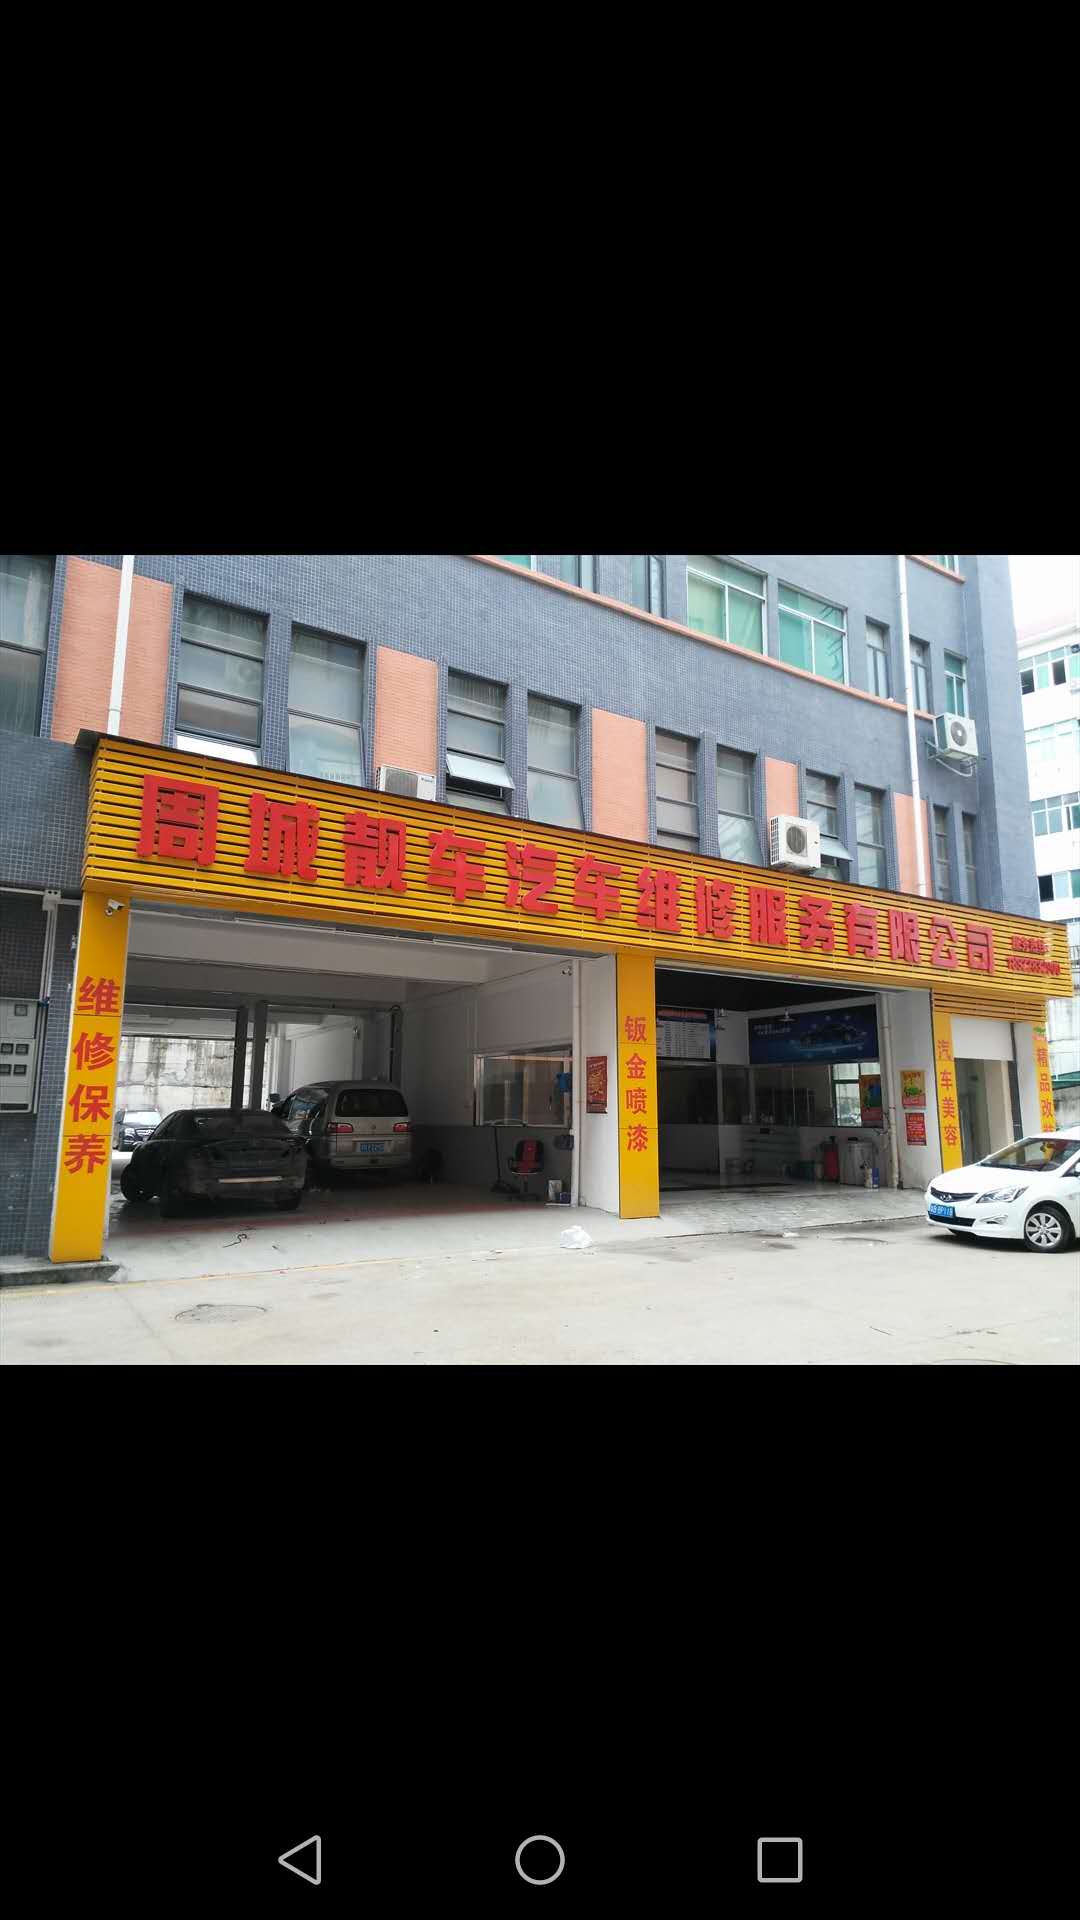 深圳市周城靓车汽车服务有限公司